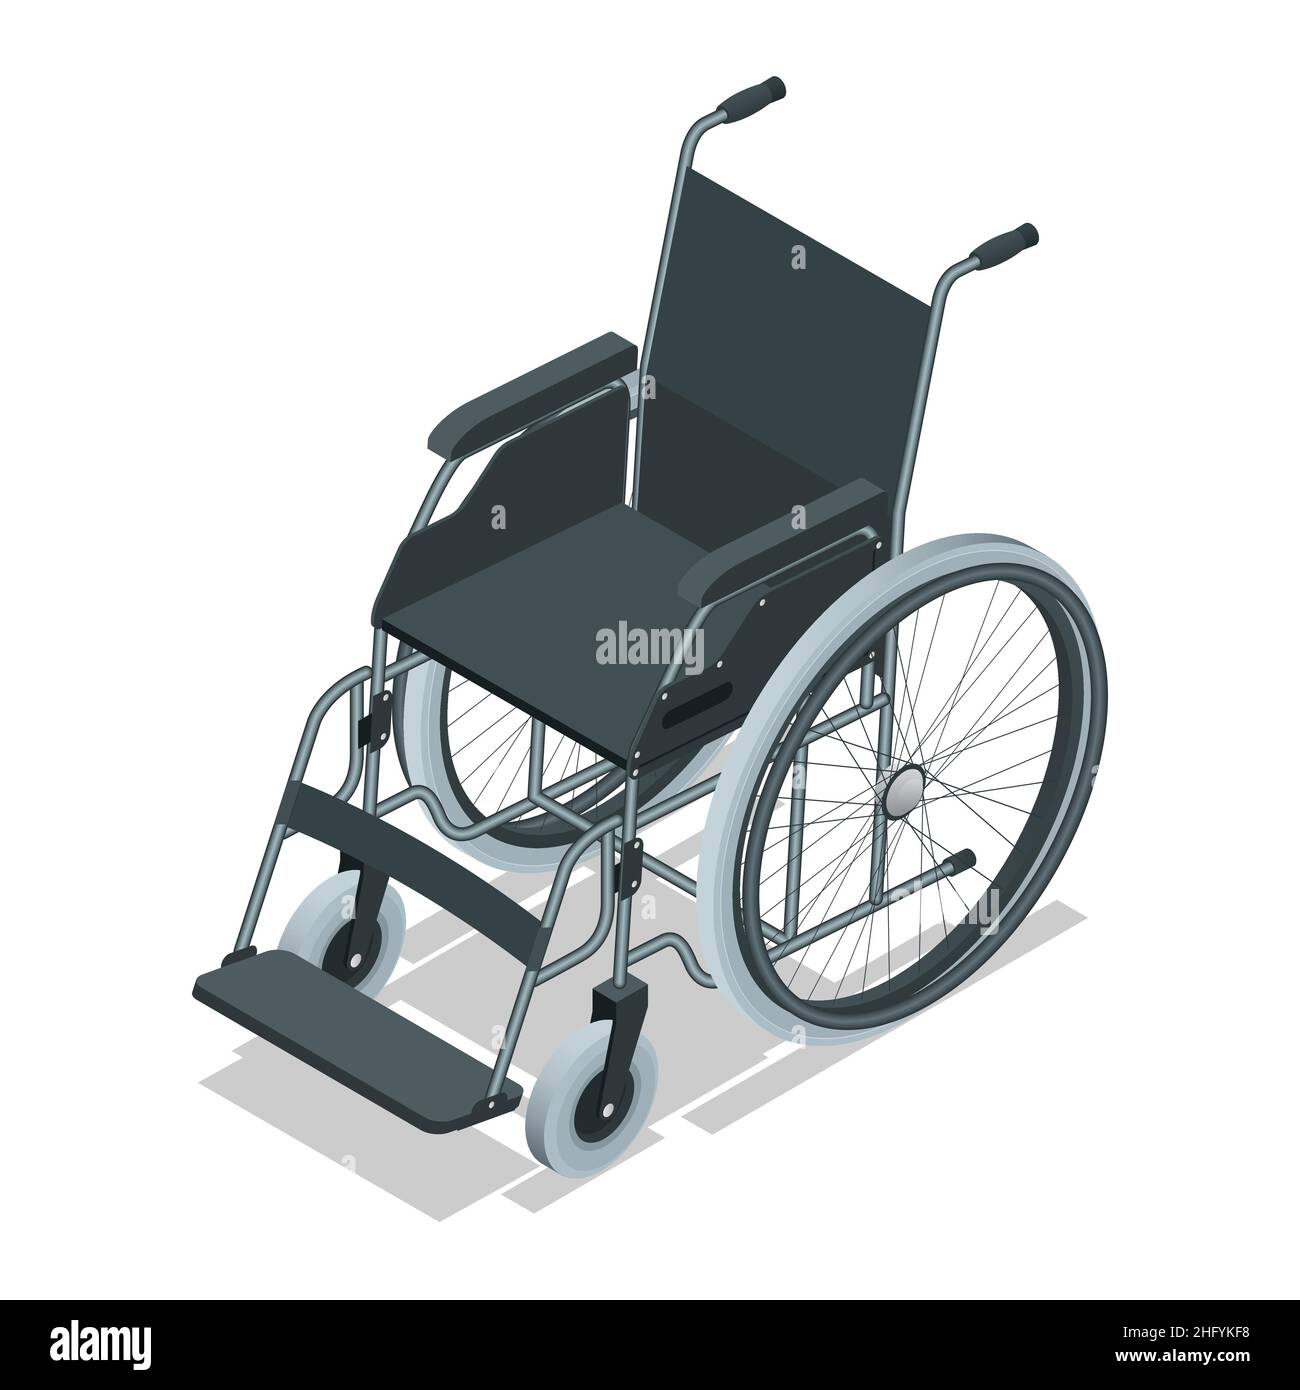 Isometrischer Rollstuhl isoliert. Medizinische Hilfsgeräte. Gesundheitskonzept. Stuhl mit Rädern, verwendet, wenn Gehen ist schwierig oder unmöglich wegen Stock Vektor